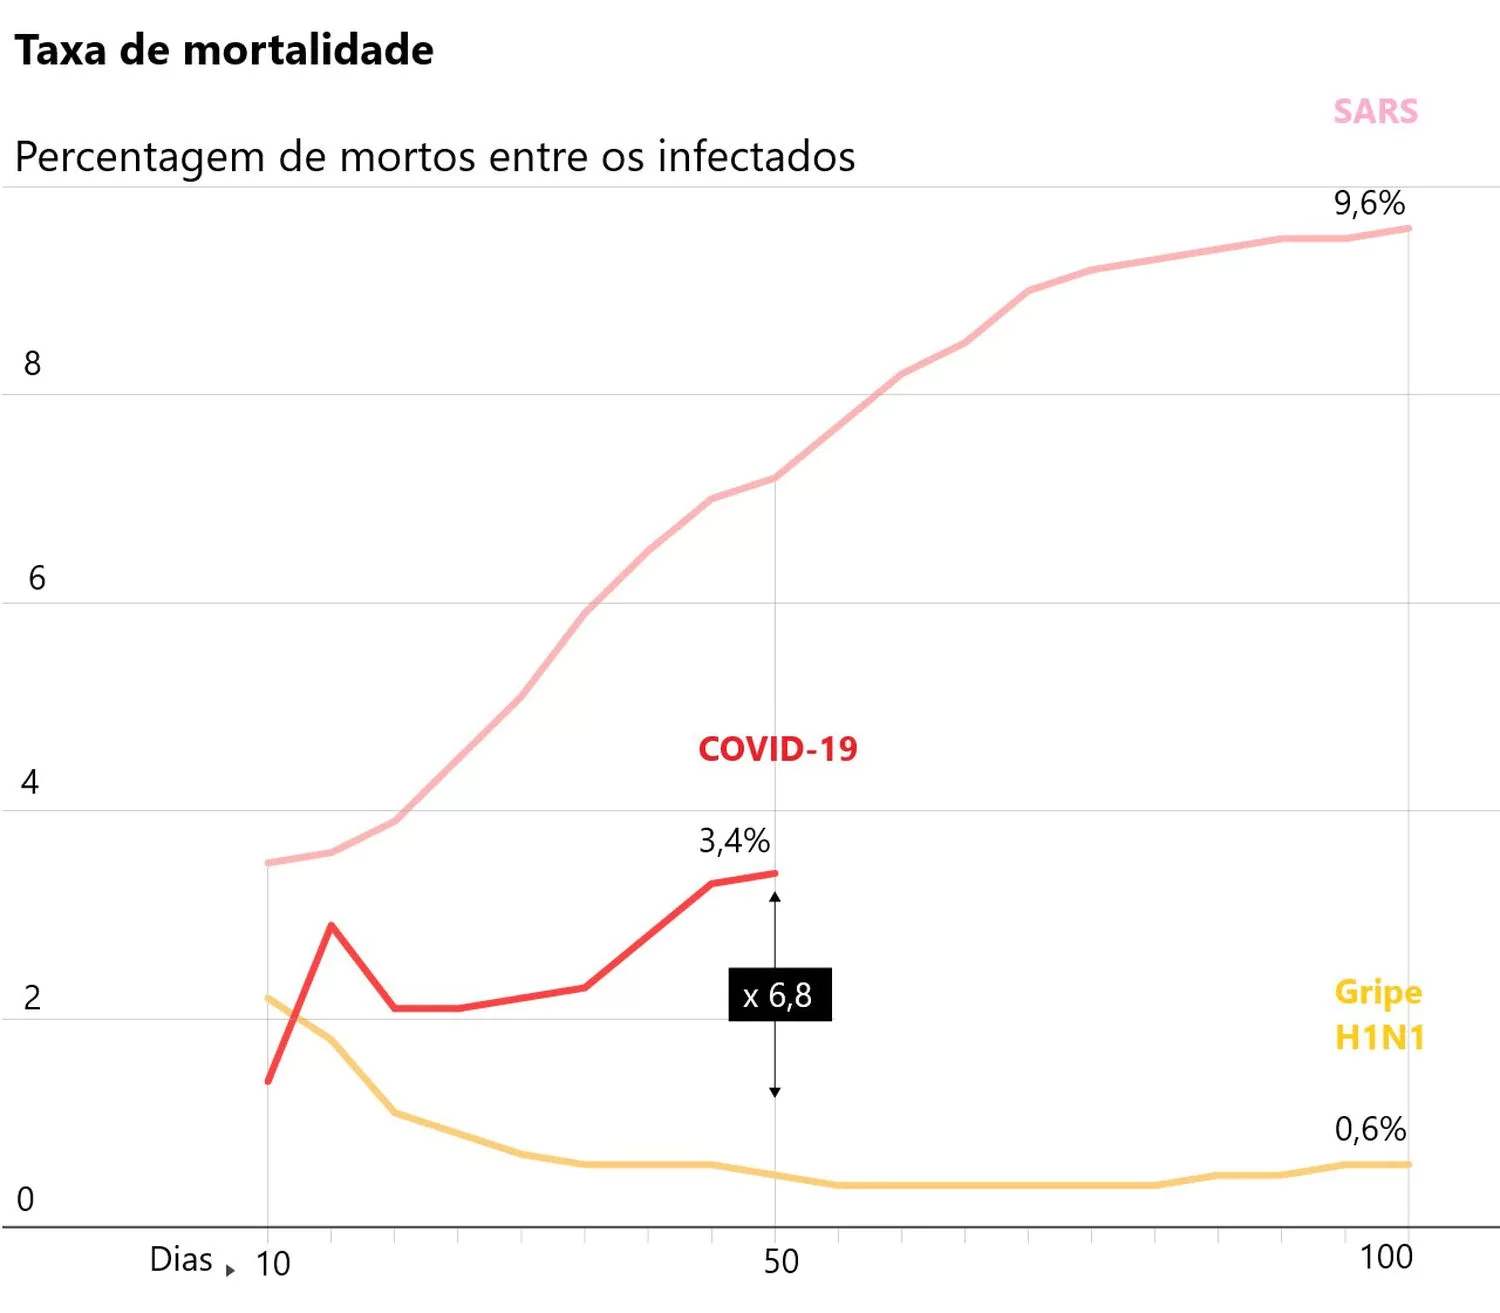 Porcentagem de mortos pelo COVID-19, H1N1 e SARS por dias.